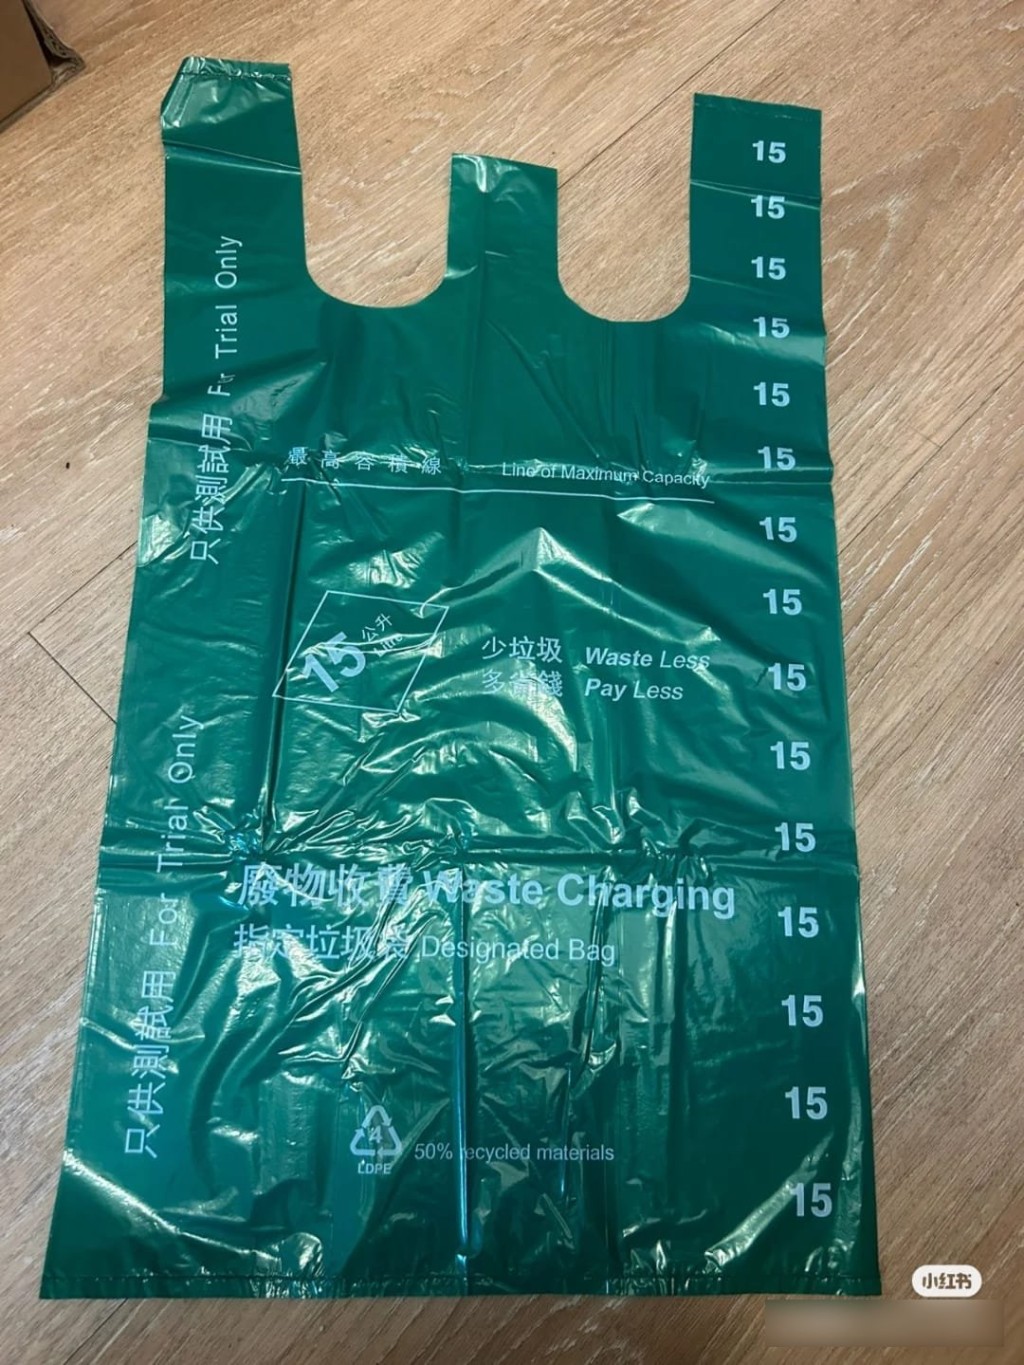 流出的膠袋圖主要是15公升的背心袋，並有只供測試用的字眼。(小紅書圖片)